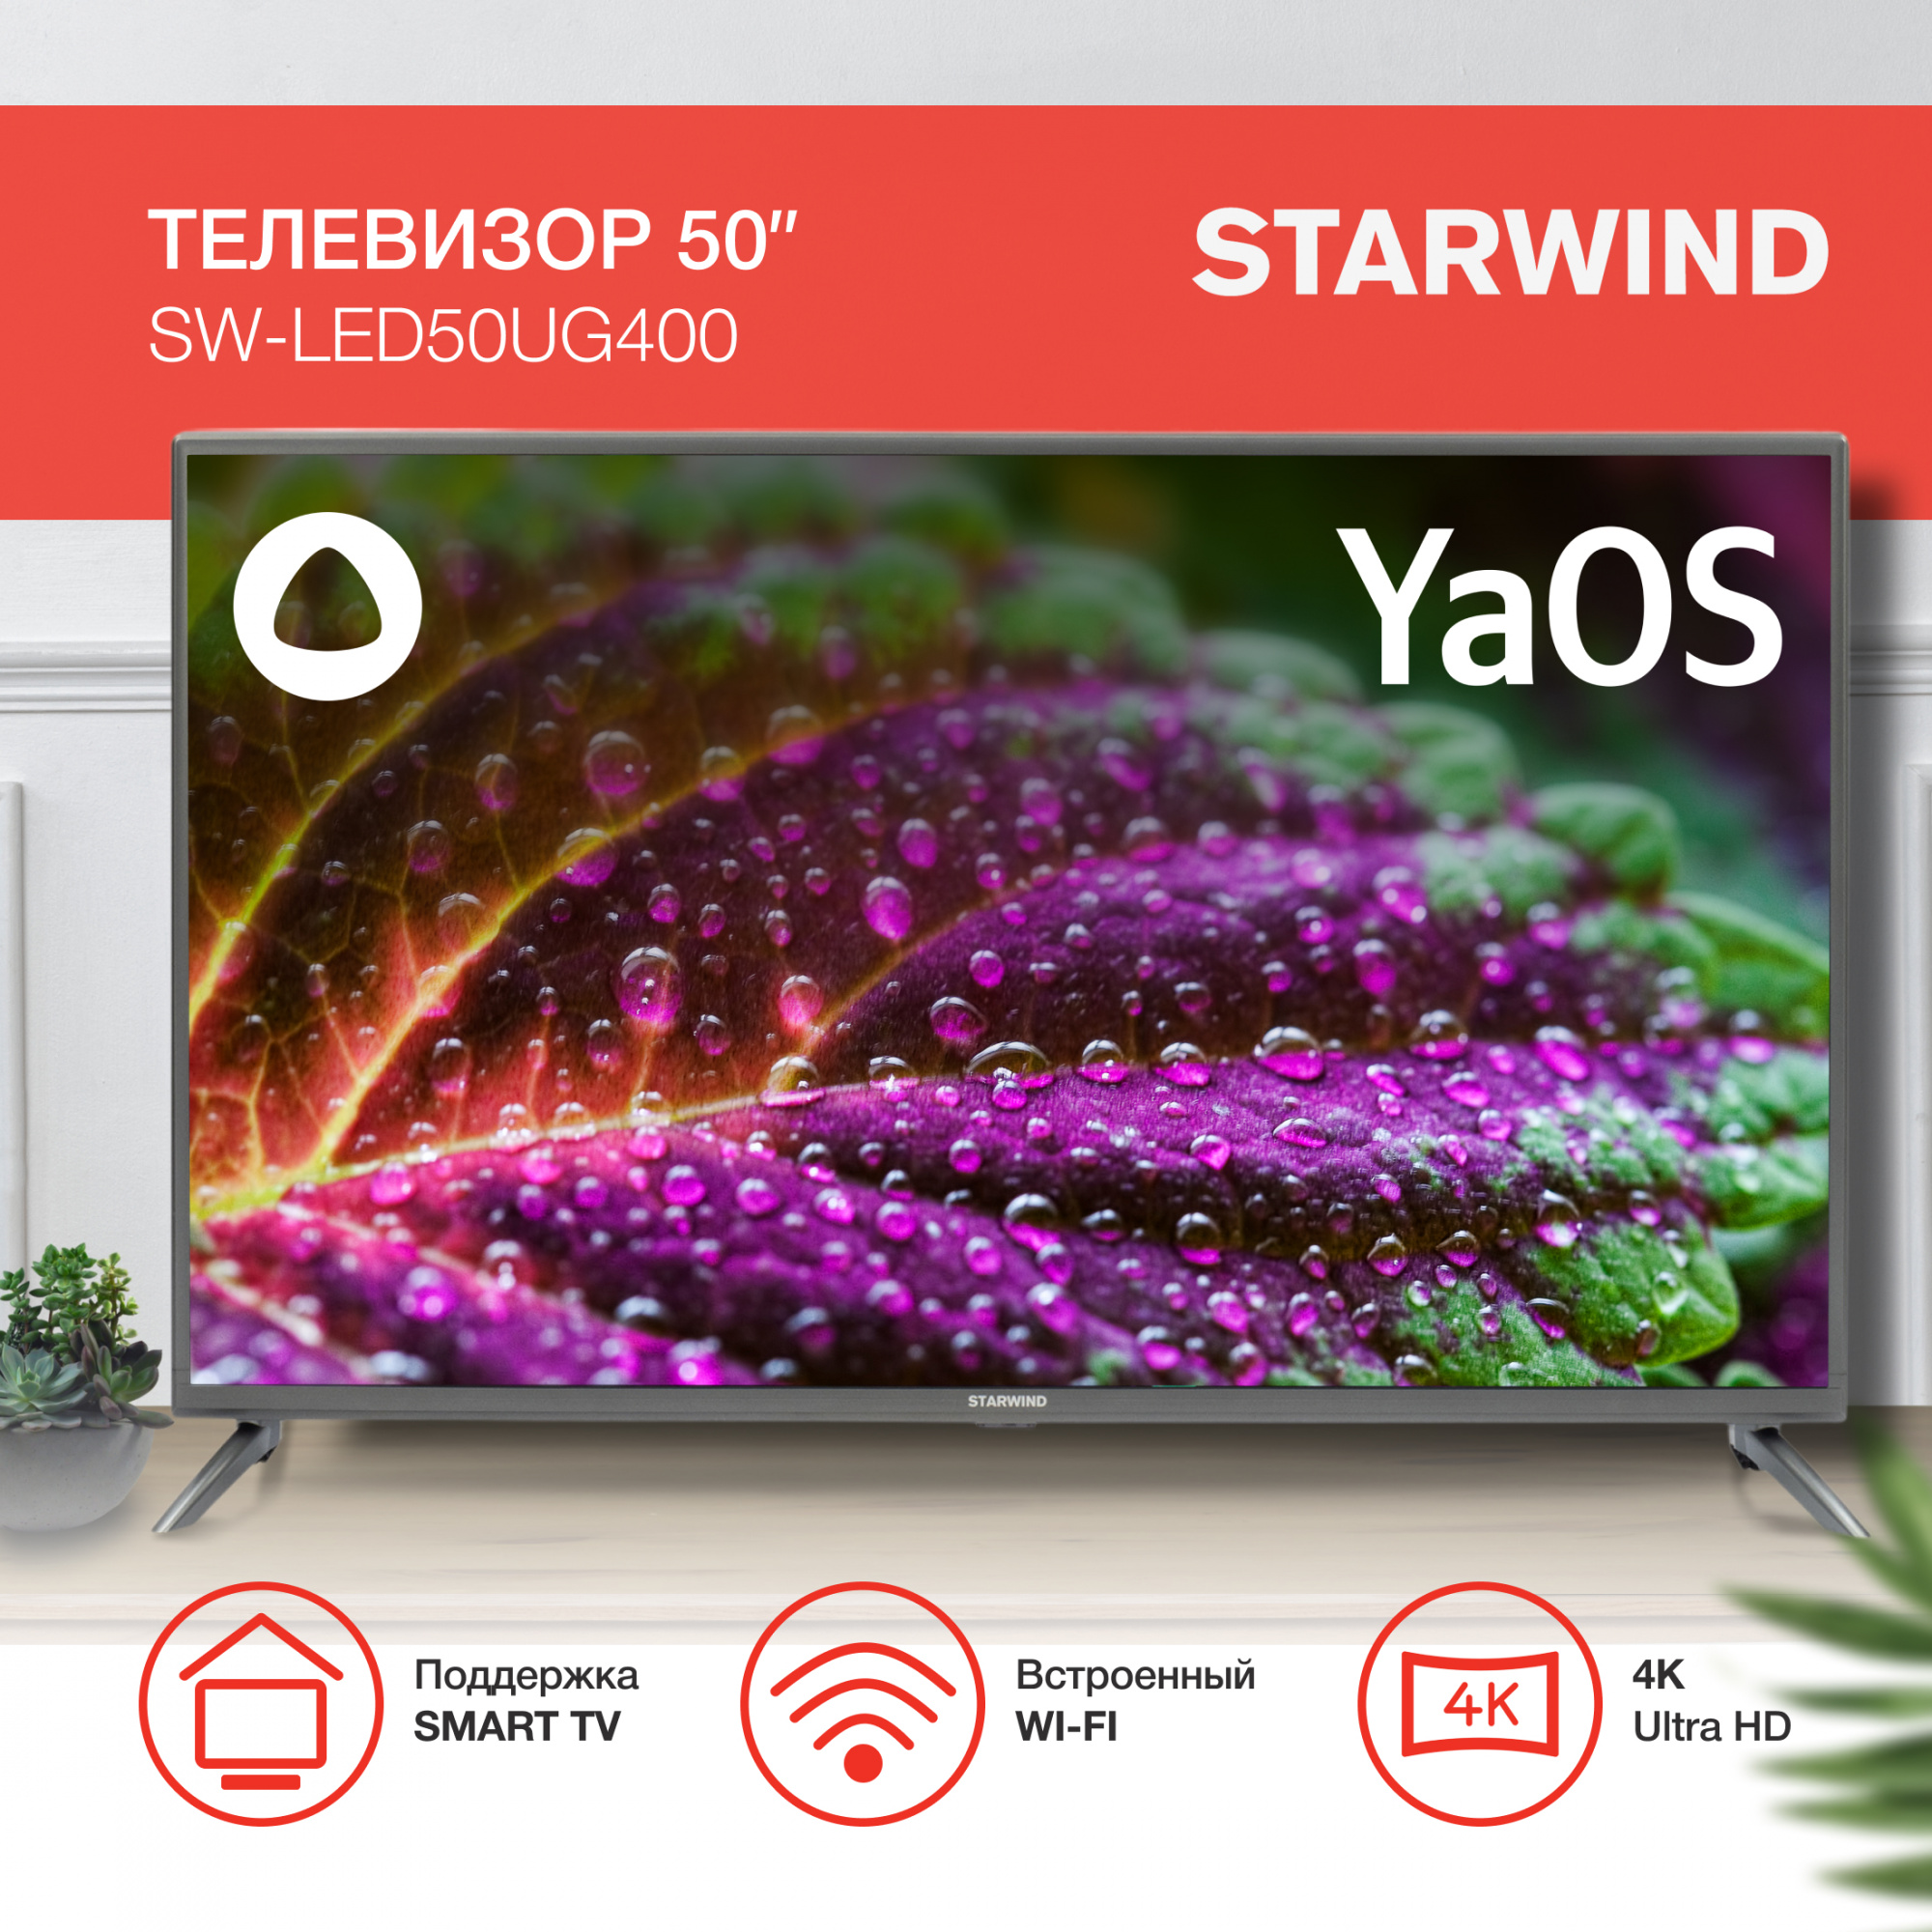 Телевизор Starwind Яндекс.ТВ SW-LED50UG400, 50", LED, 4K Ultra HD, стальной от магазина Старвинд